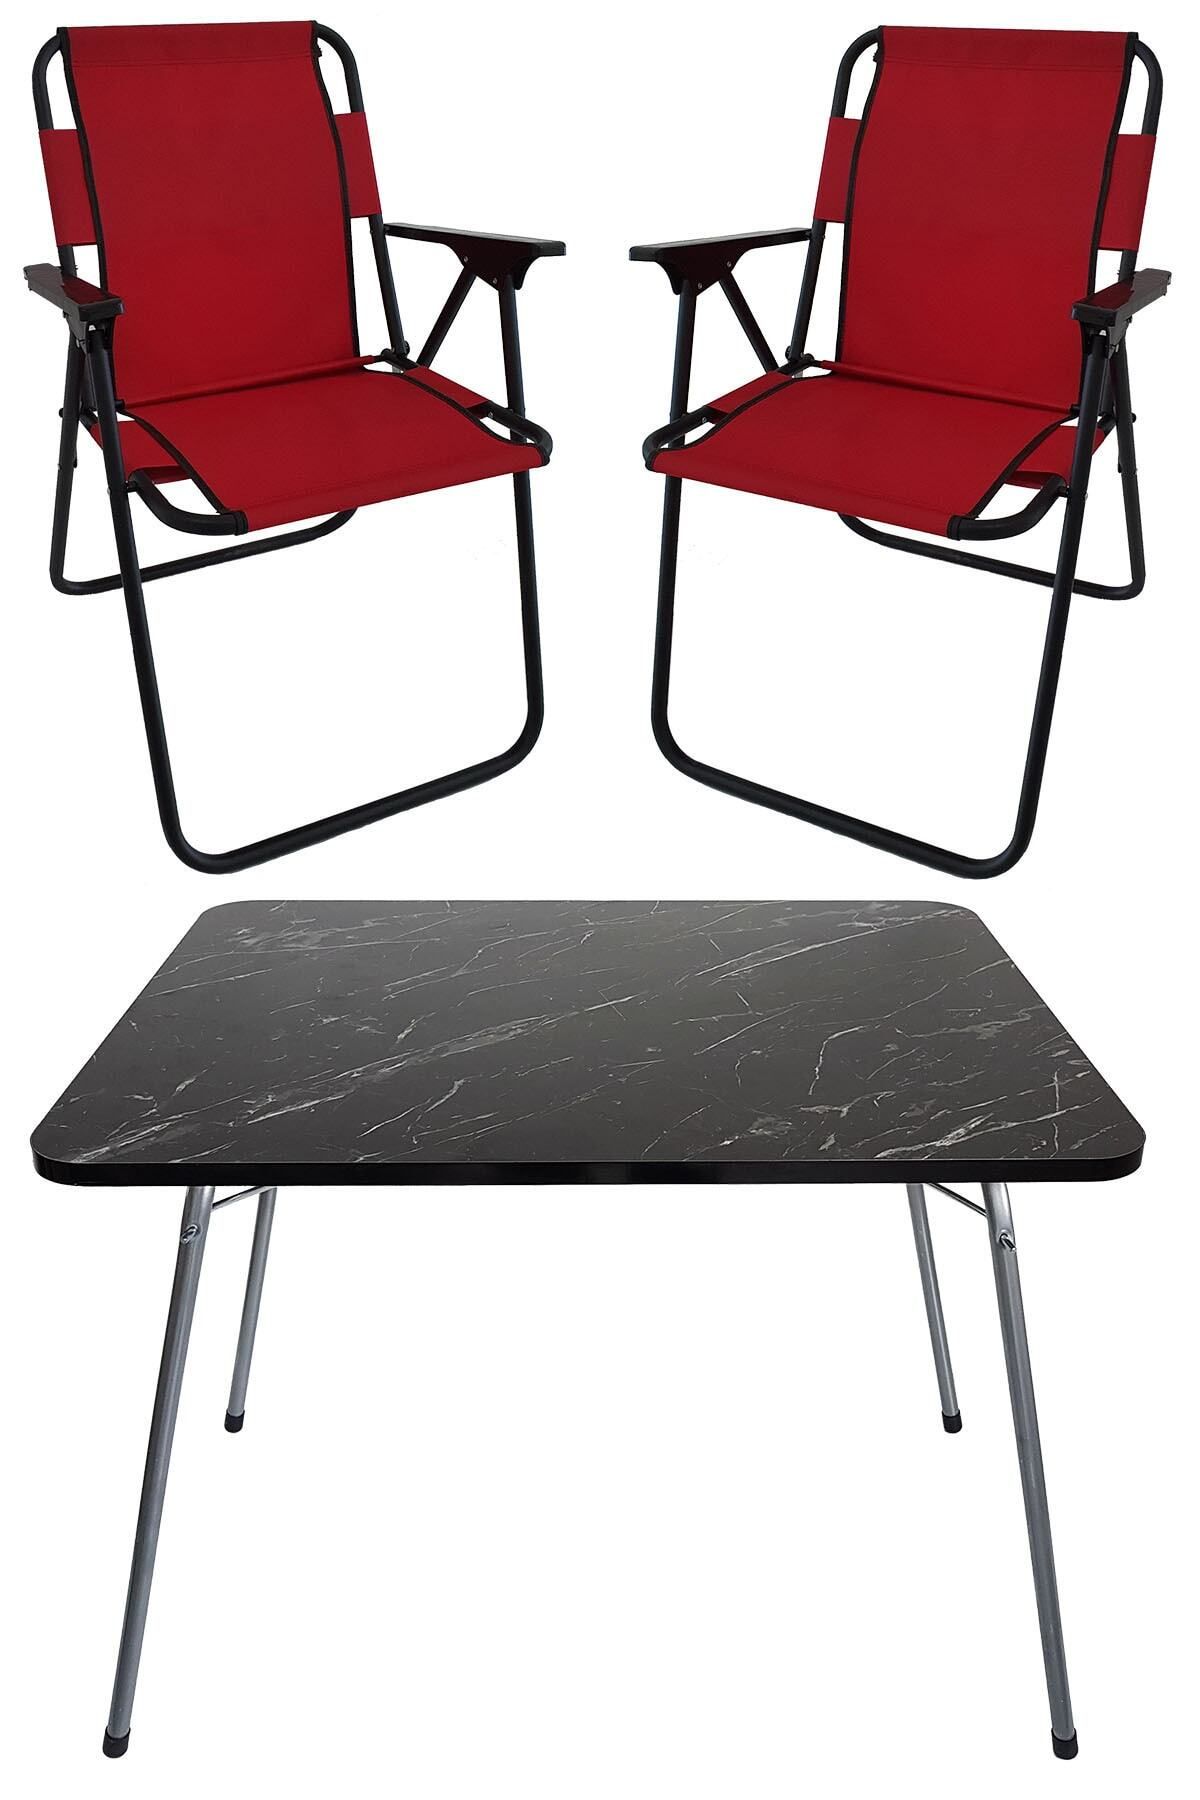 Bofigo 60x80 Granit Desenli Katlanır Masa + 2 Adet Katlanır Sandalye Kamp Seti Bahçe Takımı Kırmızı